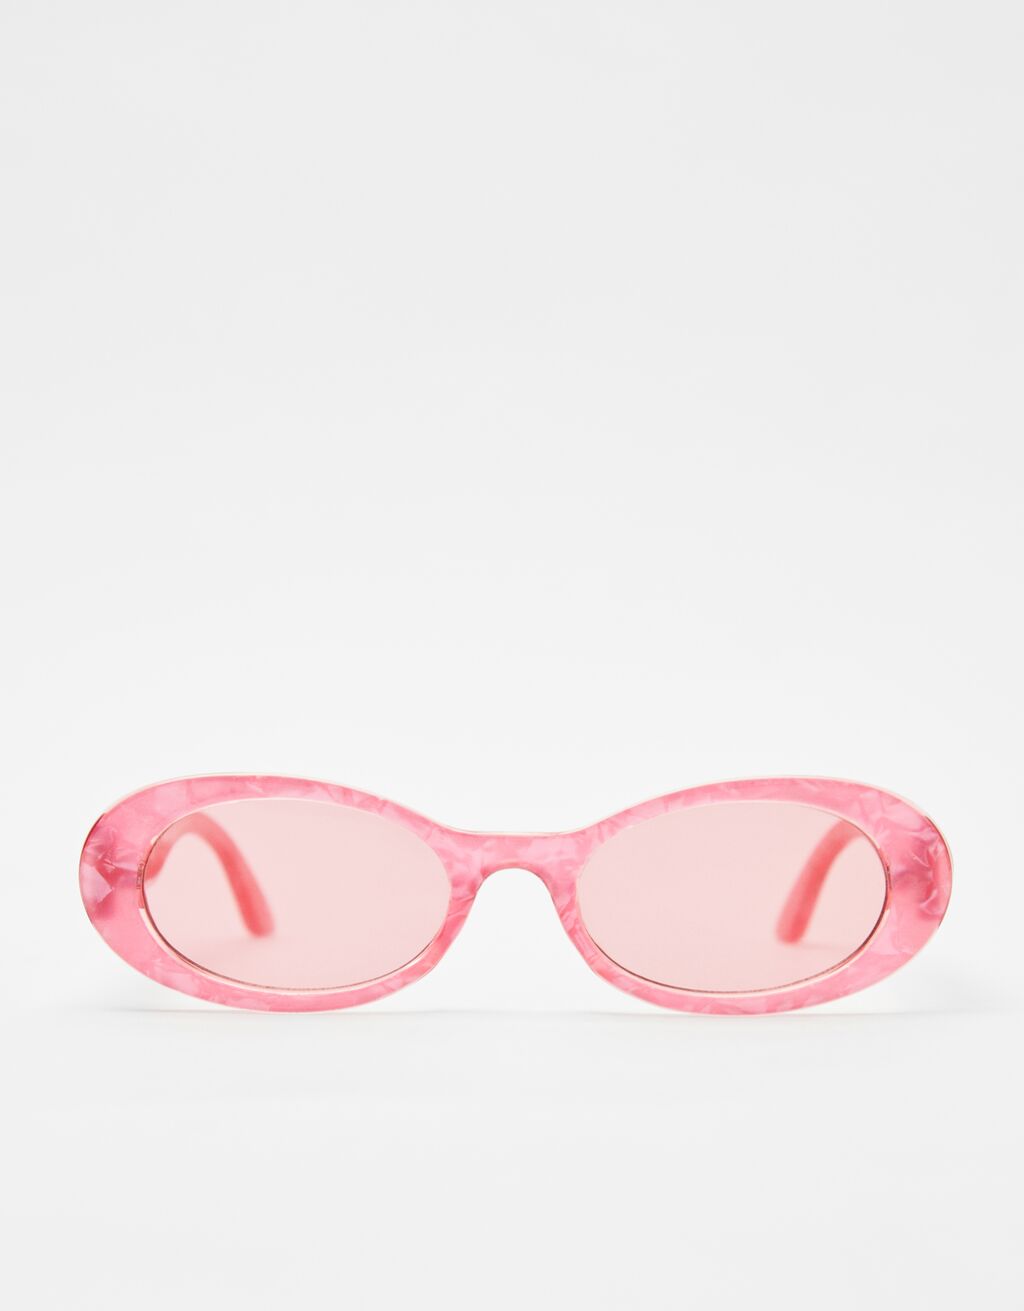 Coloured oval sunglasses